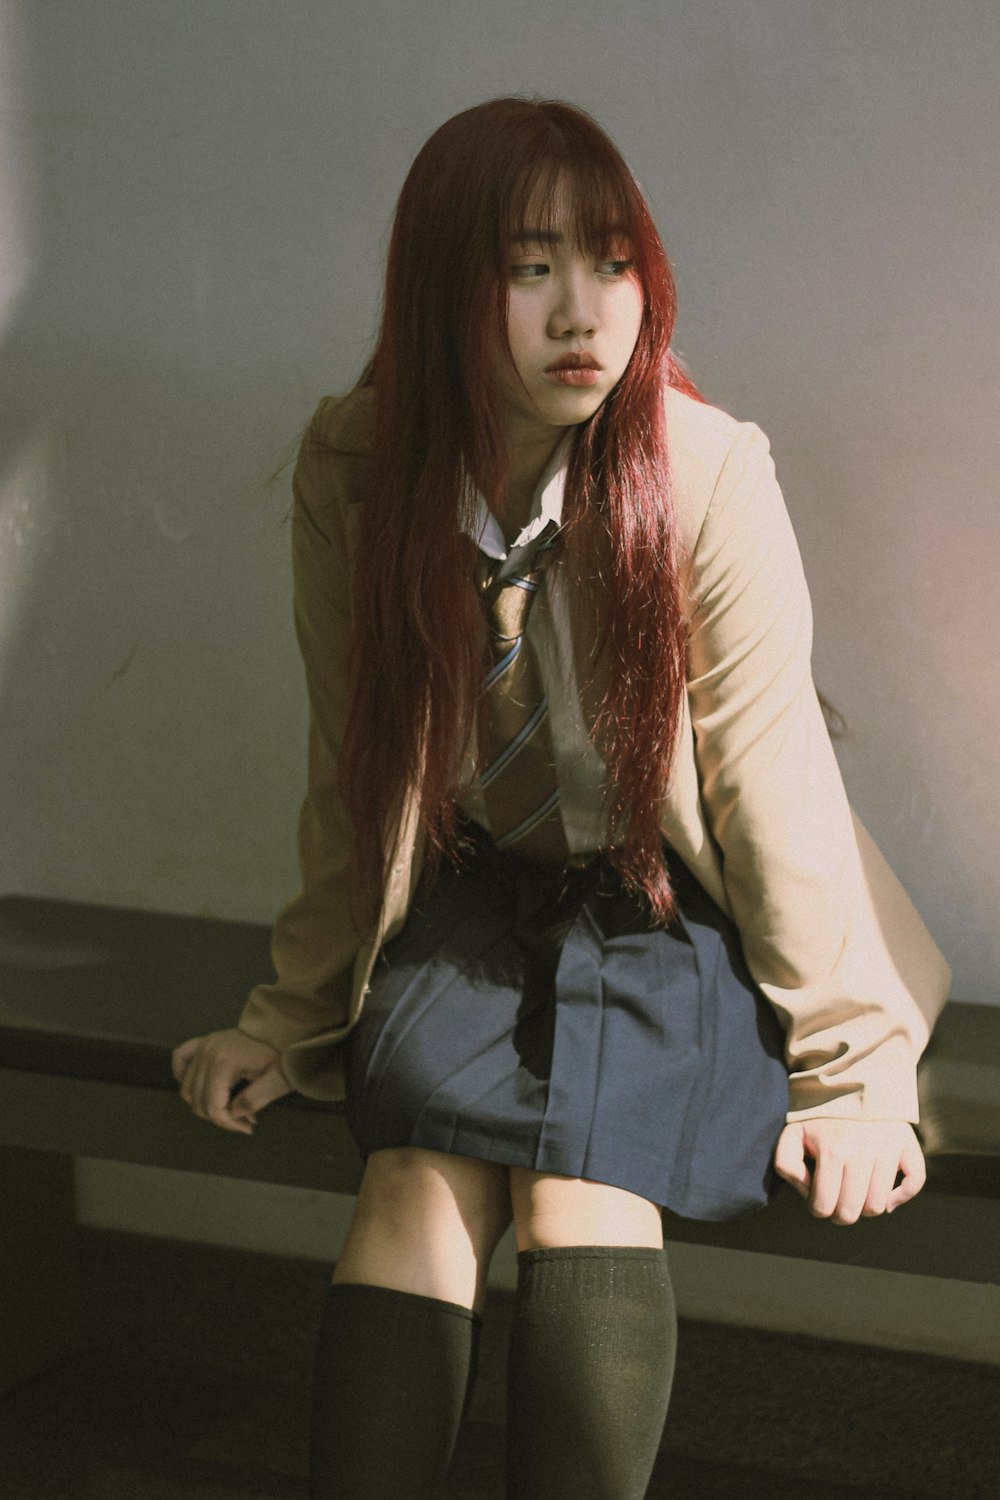 Eine Frau mit langen roten Haaren sitzt auf einer Bank